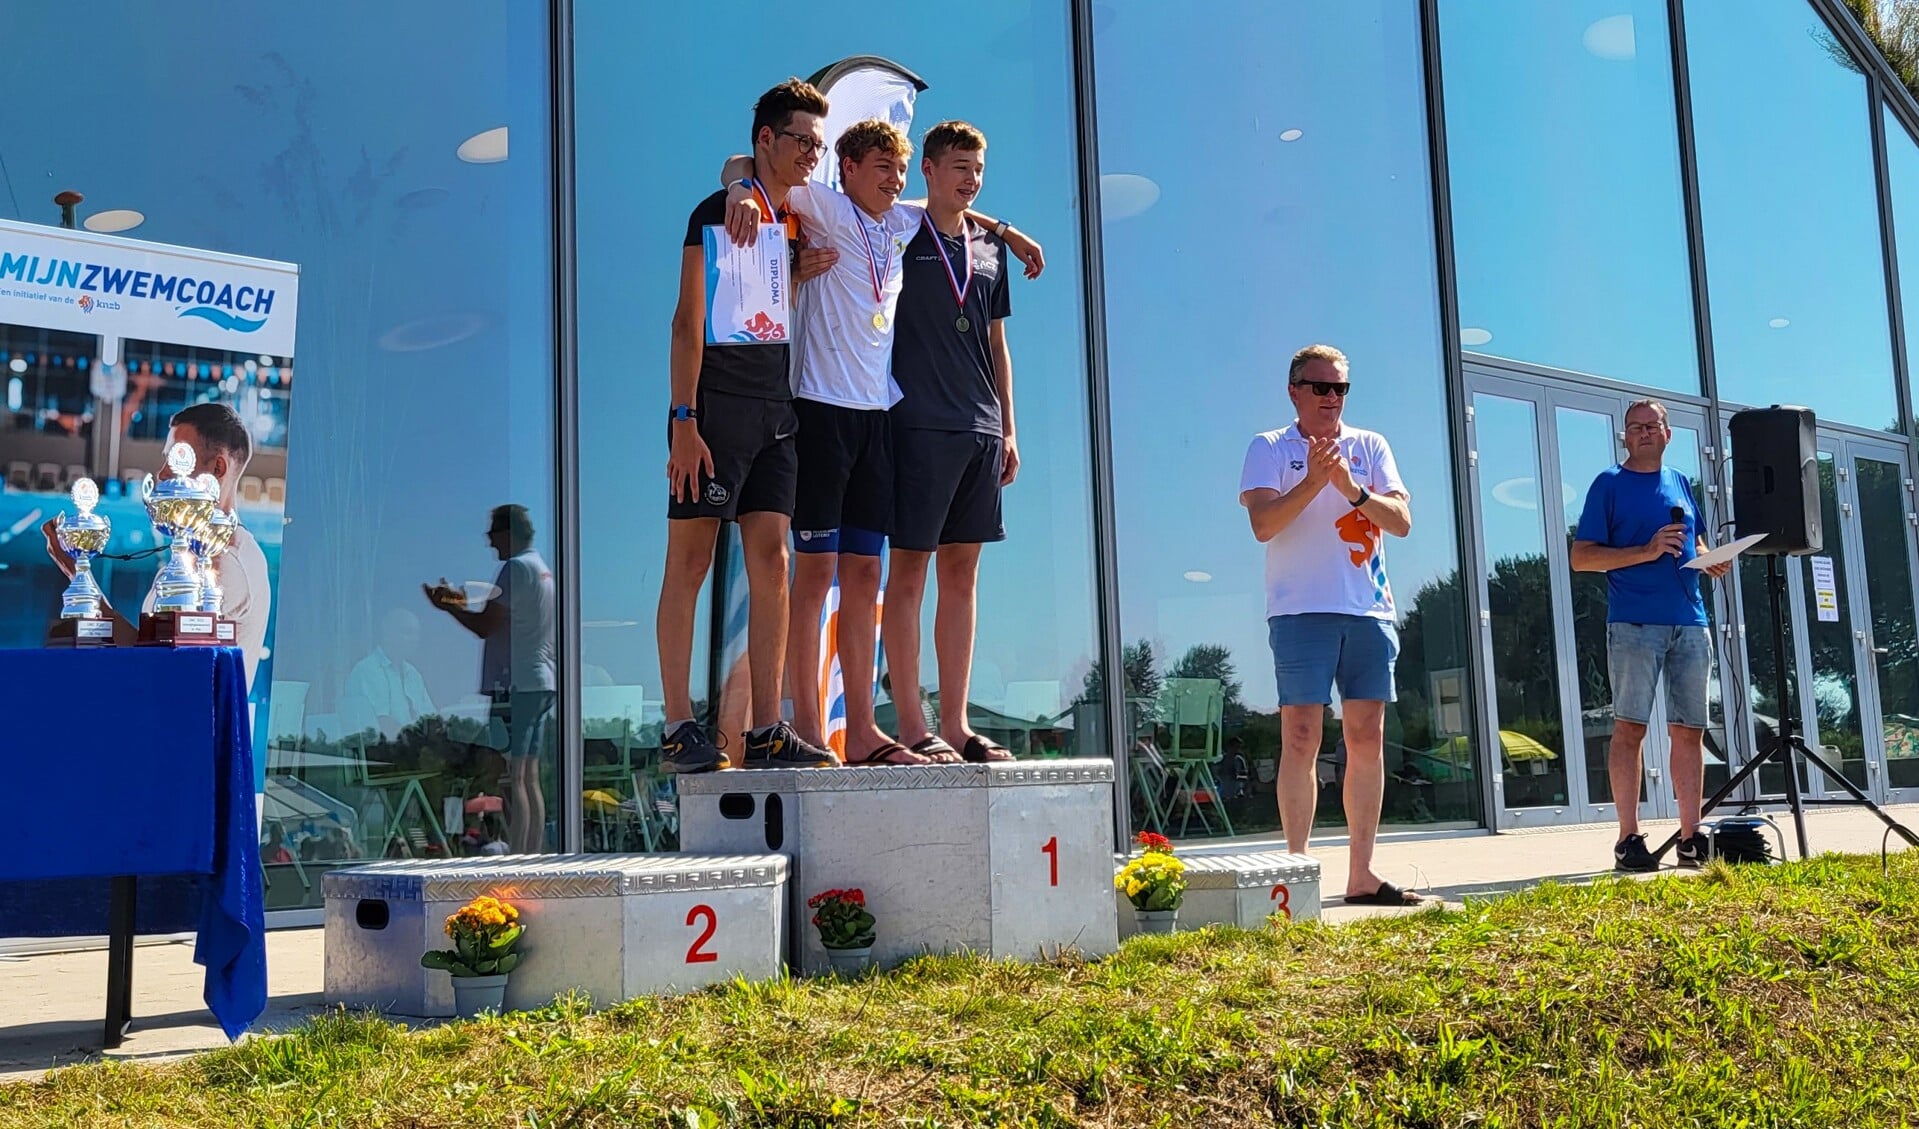 De Nederlands kampioen open water 1500m junioren 3/4 Rijk Leenders (midden).